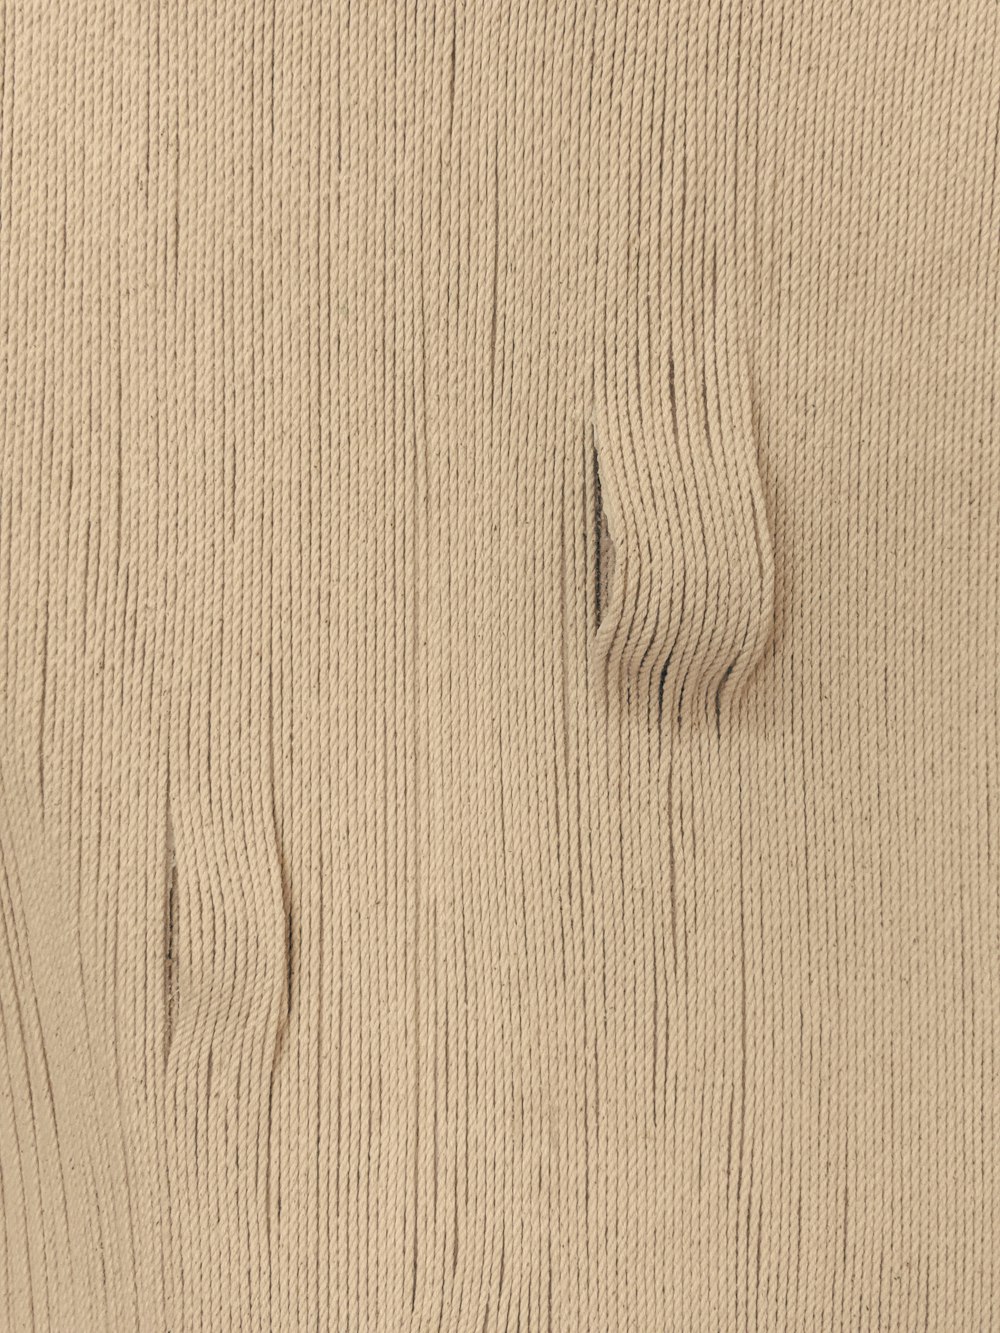 uma visão de perto de uma superfície de madeira